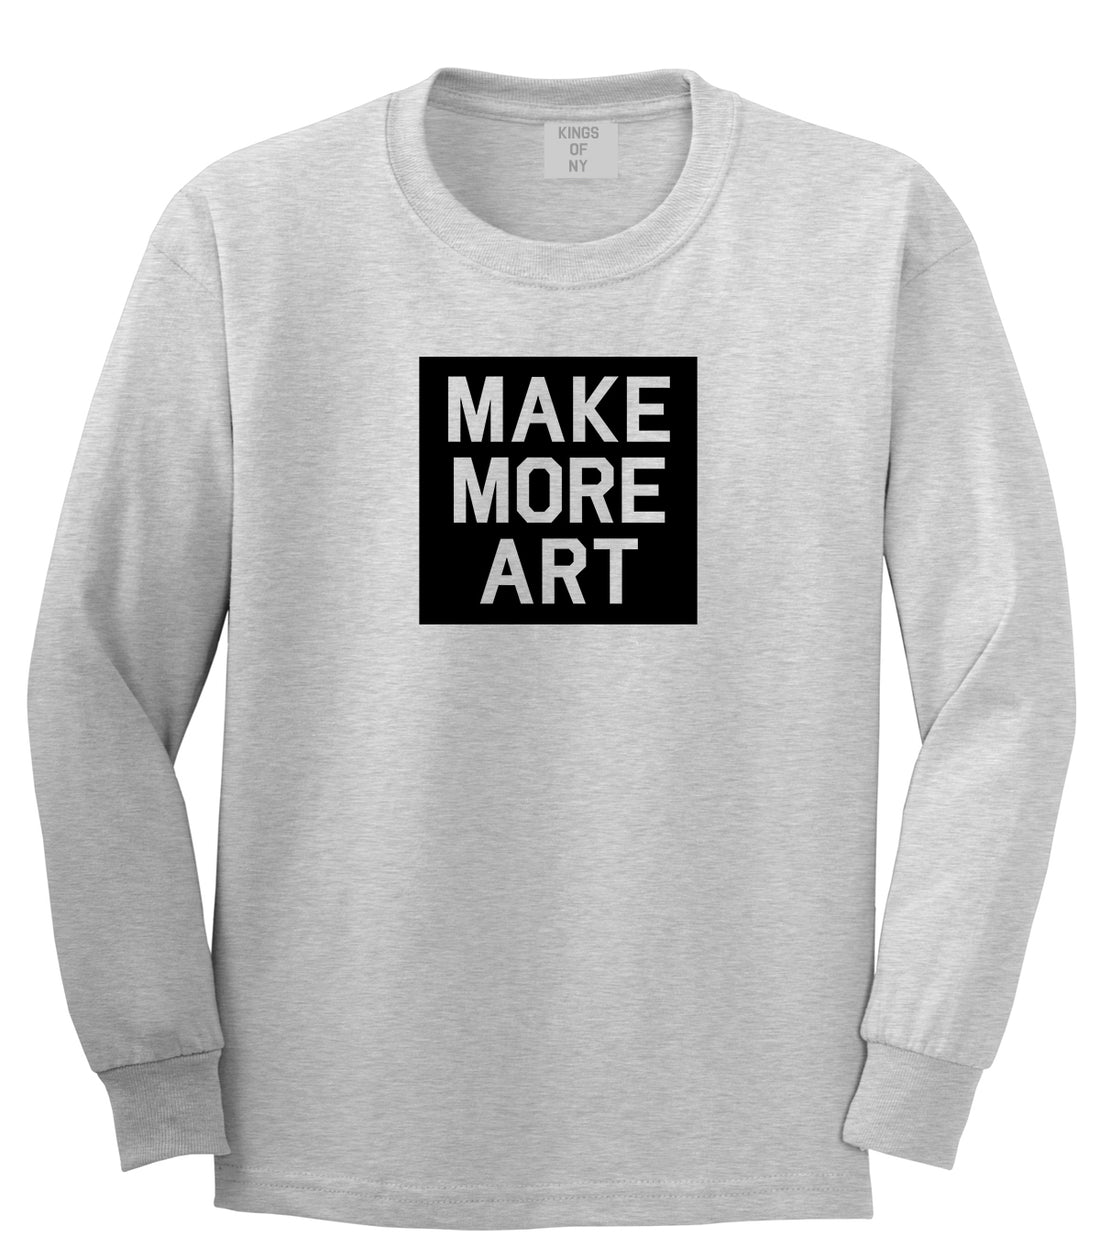 Make More Art Mens Long Sleeve T-Shirt Grey by Kings Of NY